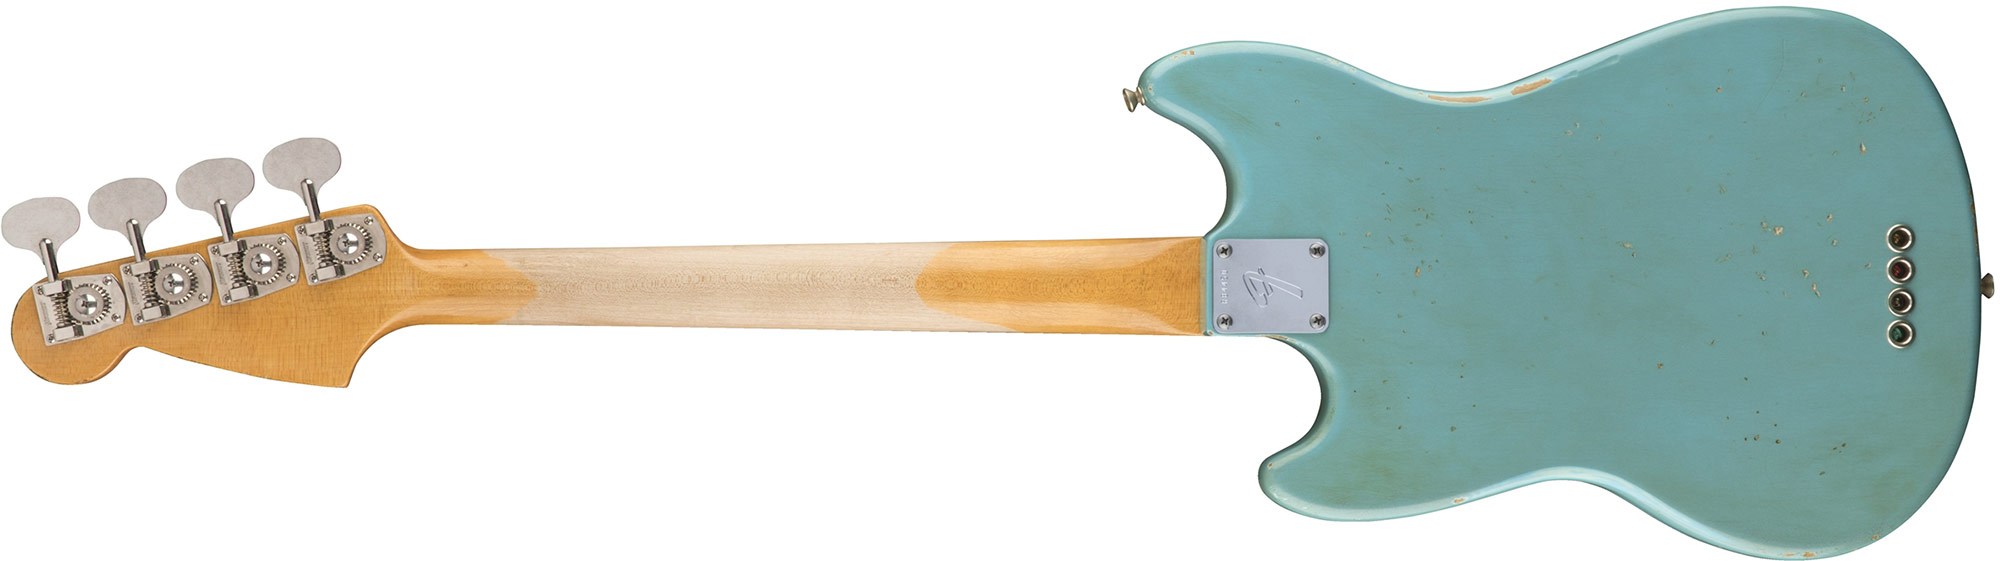 Fender Justin Meldal-johnsen Jmj Mustang Bass Road Worn Mex Rw - Faded Daphne Blue - Basse Électrique Enfants - Variation 1